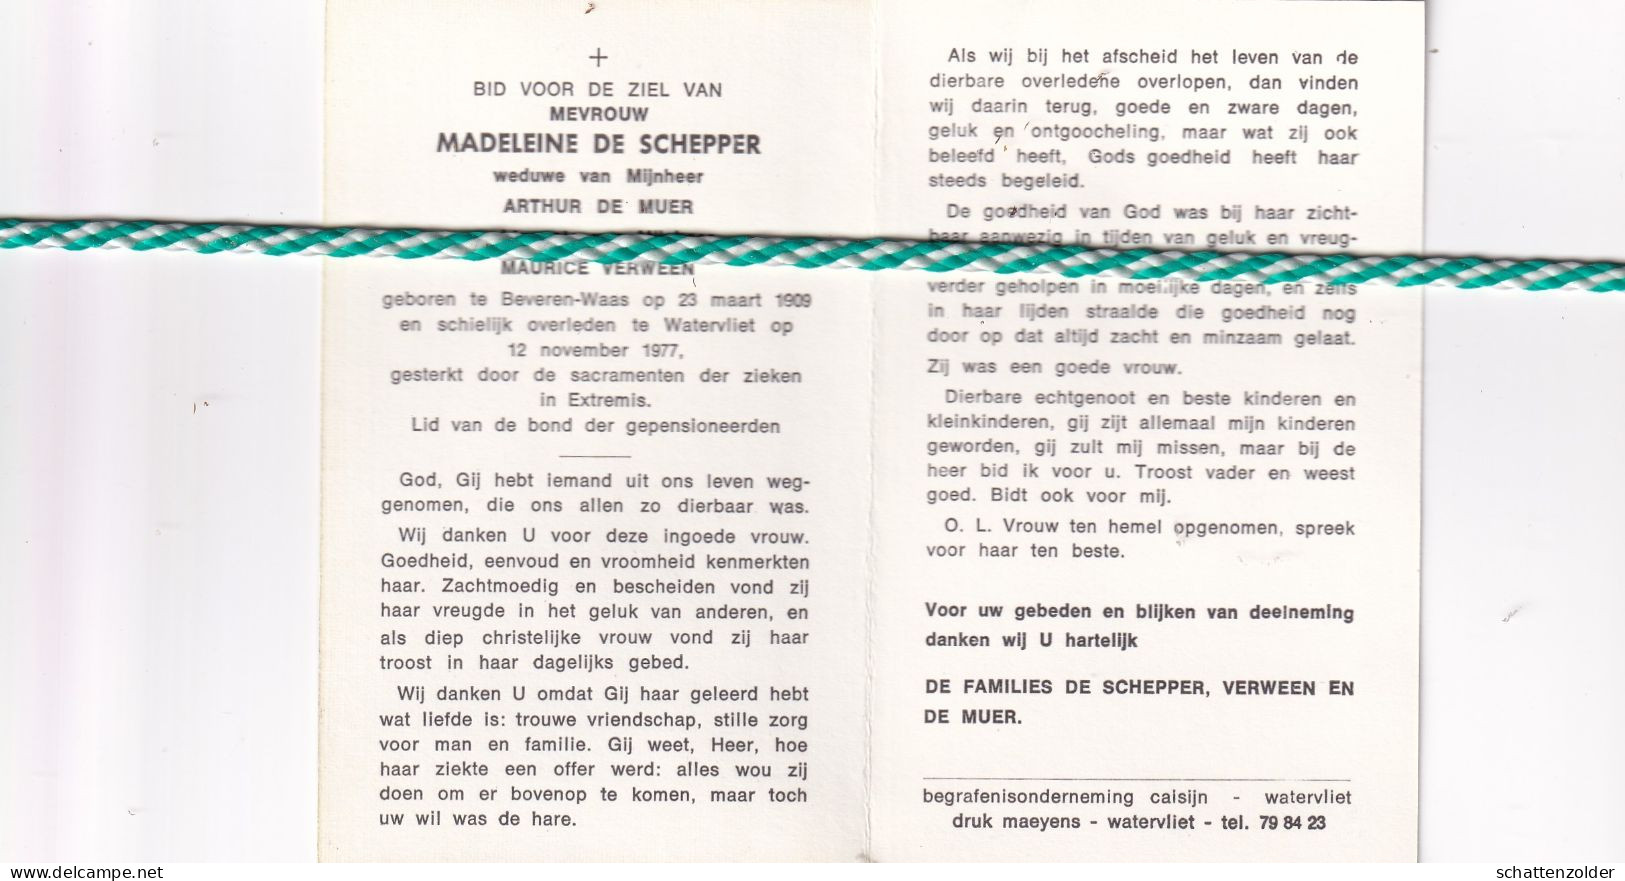 Madeleine De Schepper-De Muer-Verween, Beveren-Waas 1909, Watervliet 1977 - Todesanzeige